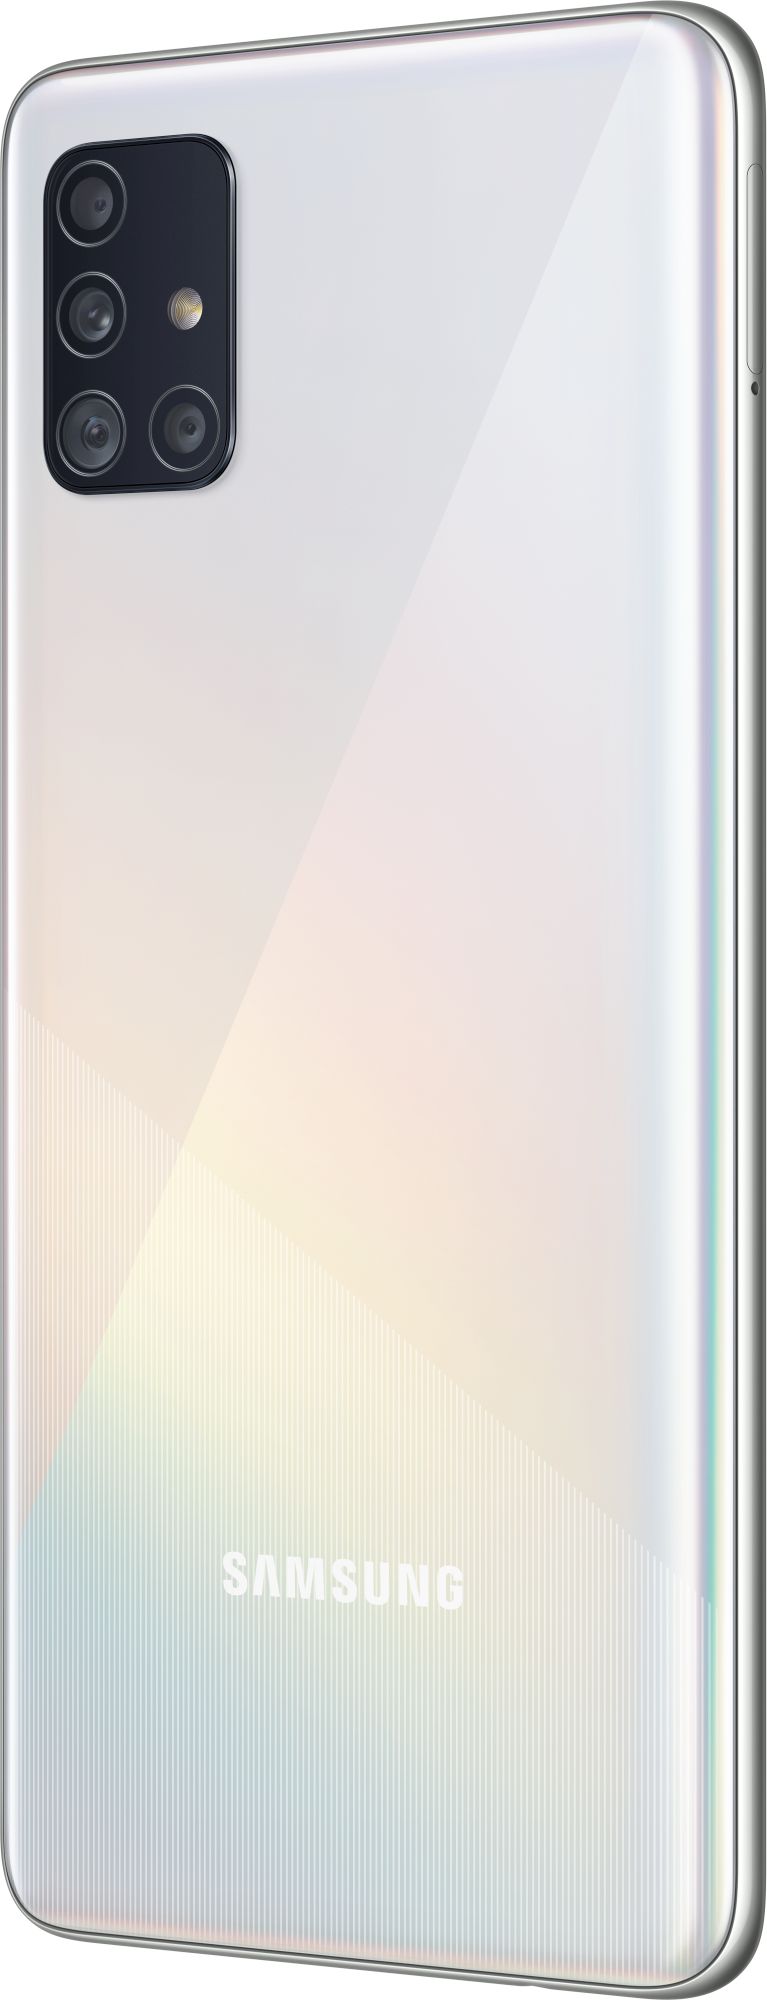 Samsung Galaxy A51 64GB_hor White